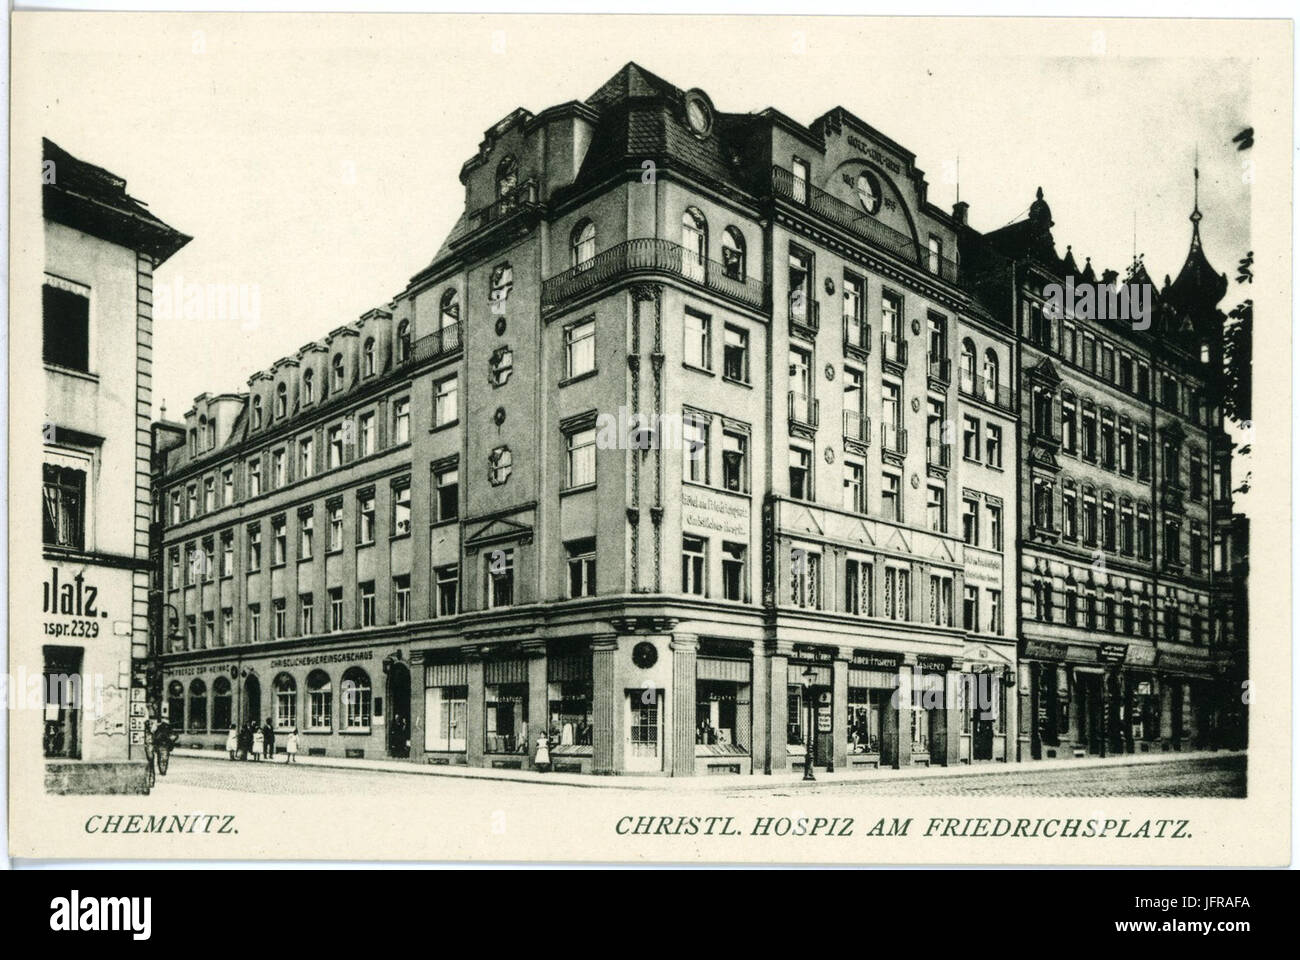 18044-Chemnitz-1914-Christliches Hospiz am Friedrichsplatz-Brück & Sohn Kunstverlag Stock Photo